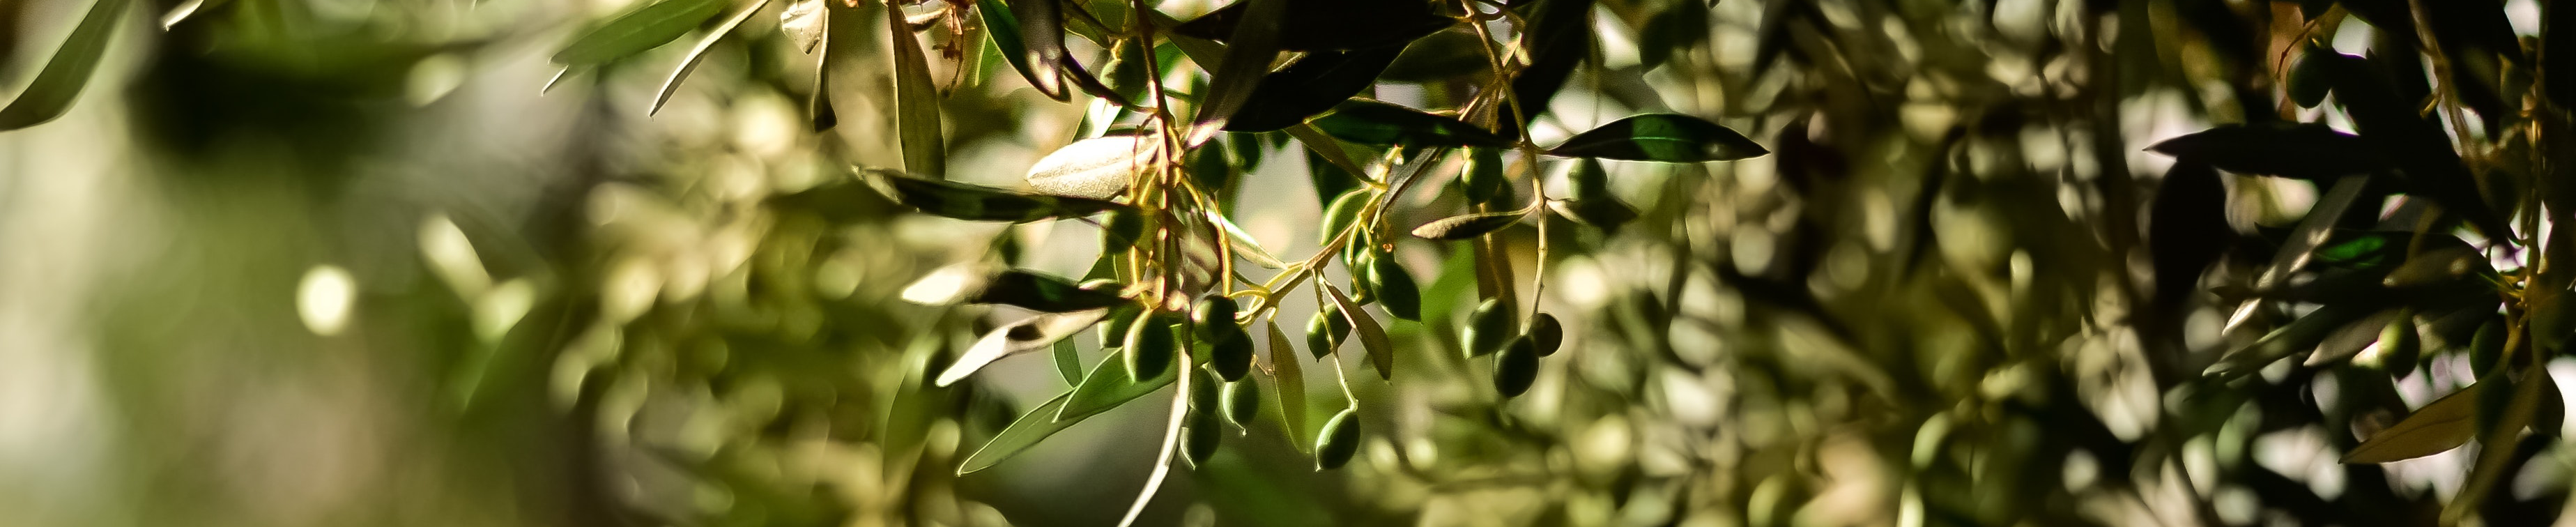 Huile d'olive et olives italiennes